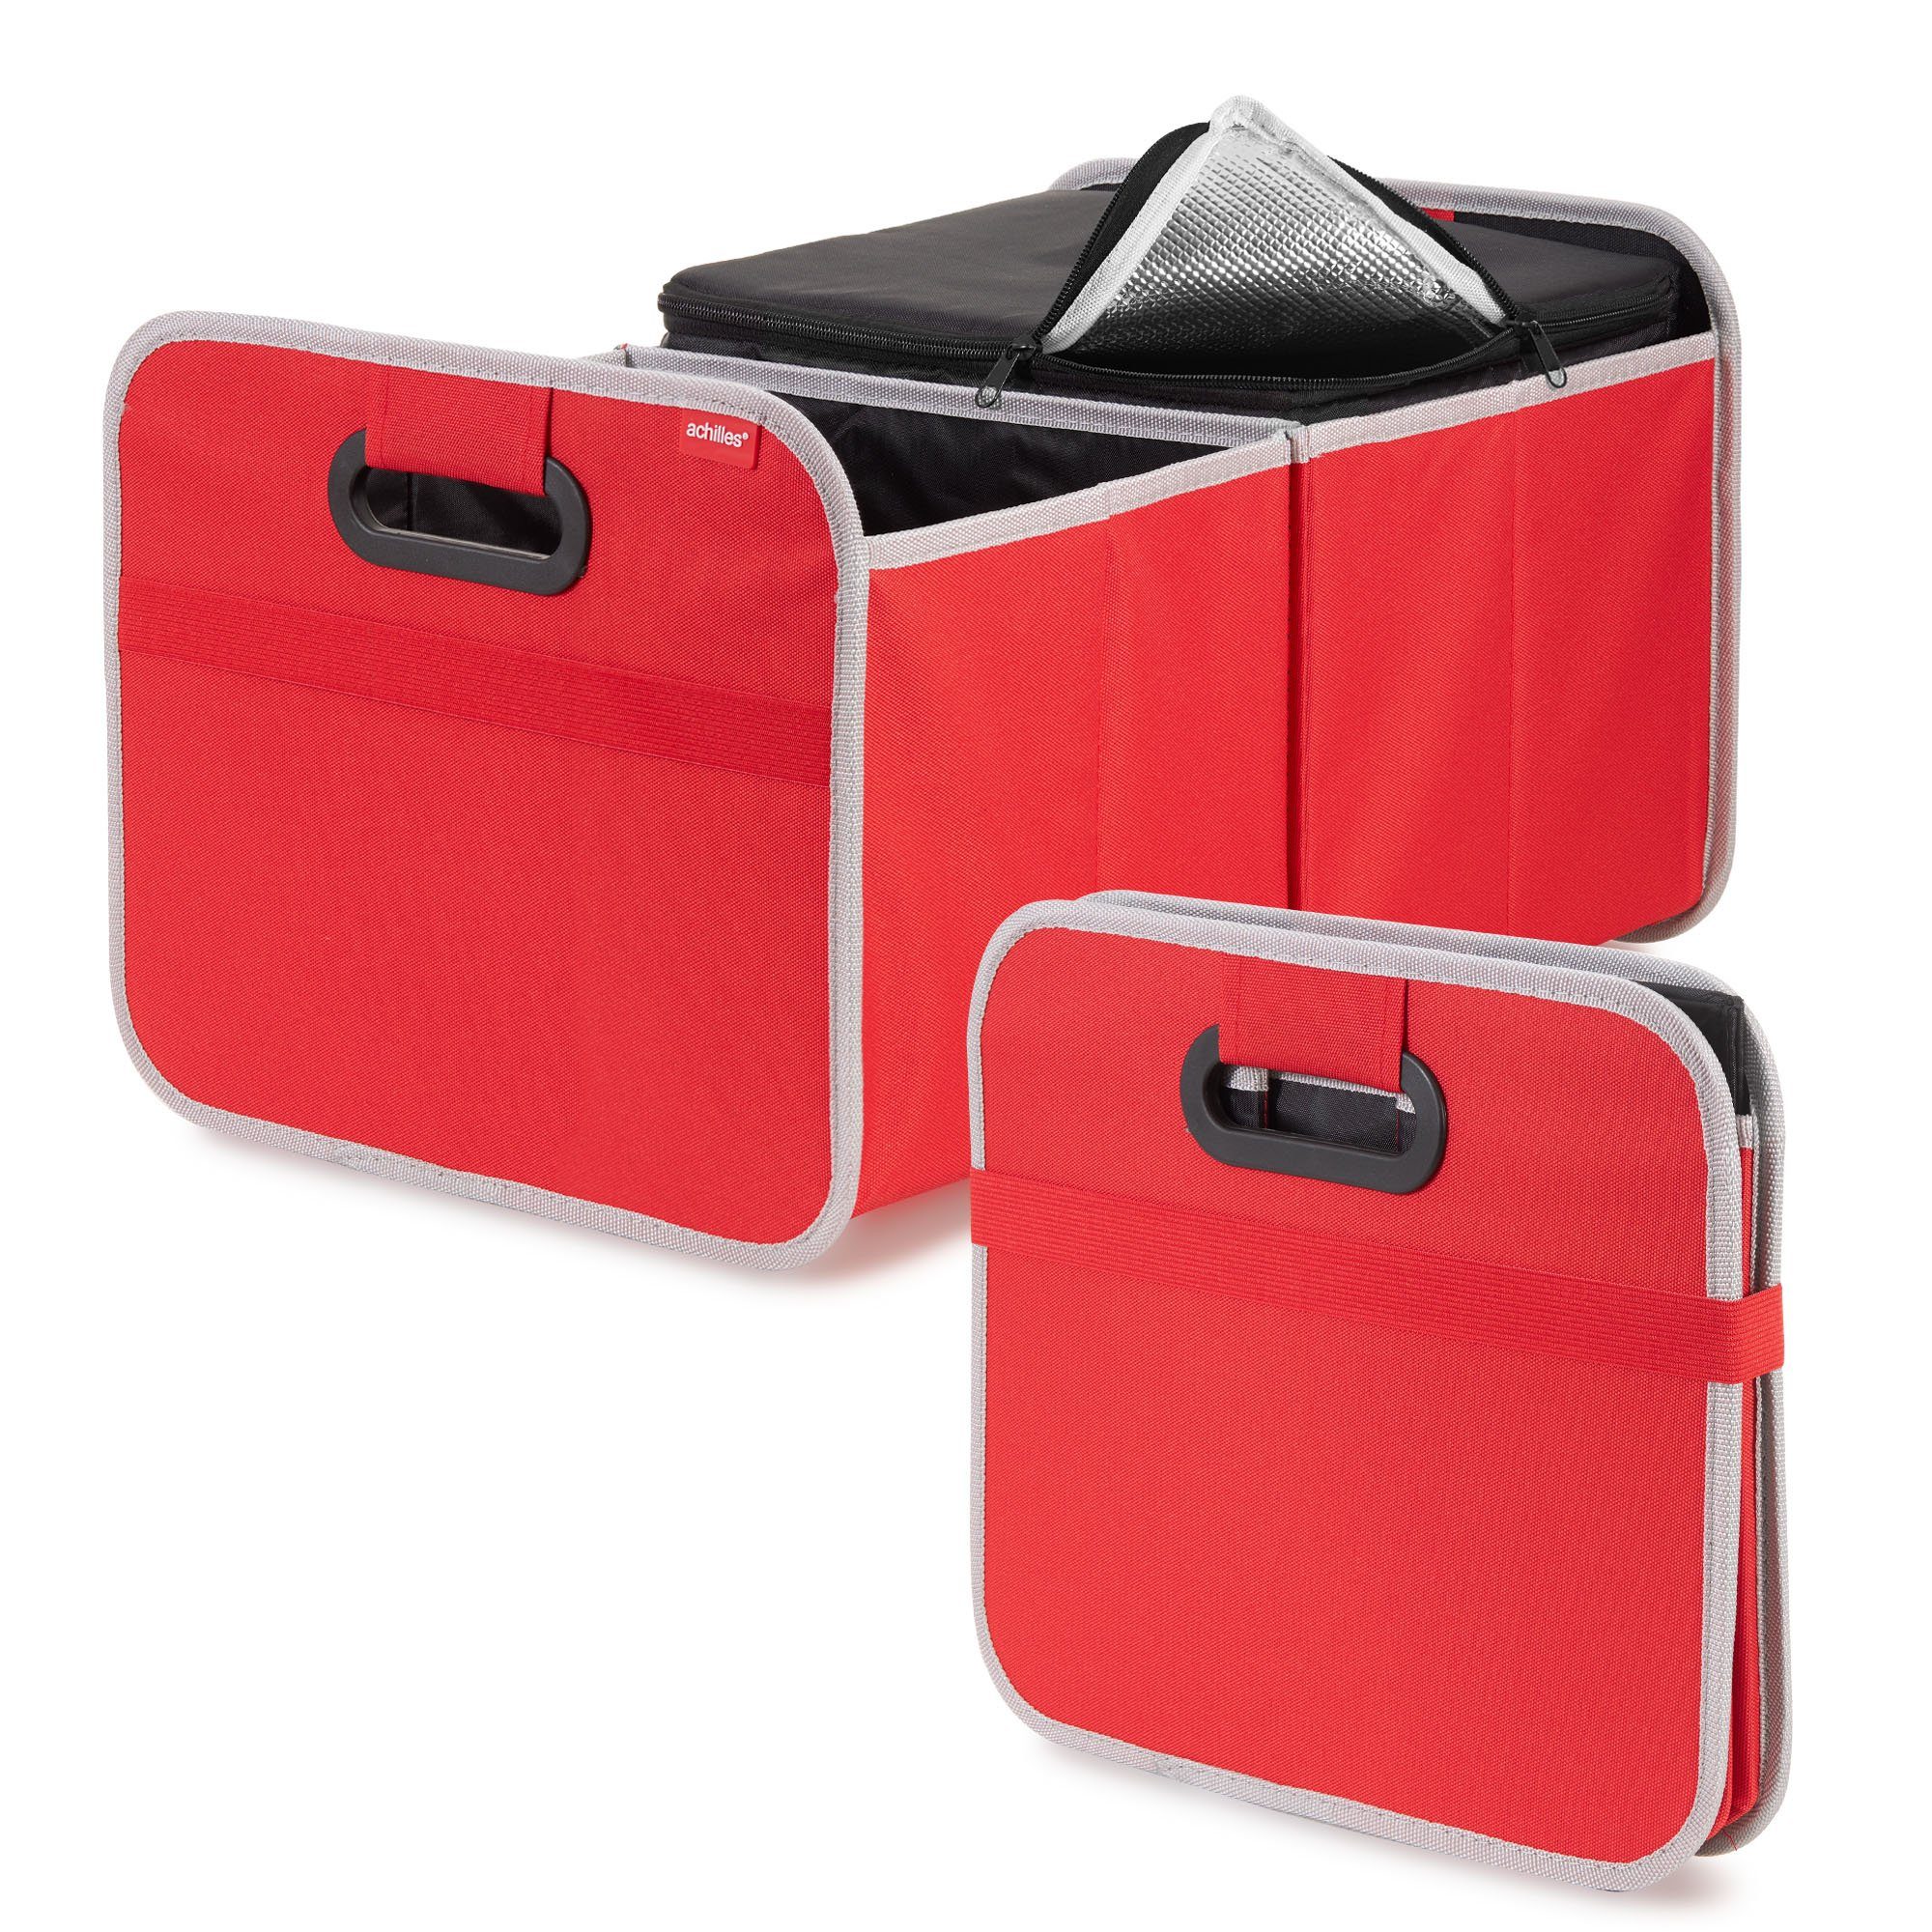 achilles Klappbox Auto Faltbox mit Kühleinsatz, Faltbare Kühlbox,  Kofferraum-Organizer, Kofferraumtasche Kühlfunktion, Kühl-Klappbox,  Einkaufskorb, Falt-Korb, 50 cm x 32 cm x 27 cm, 40 l